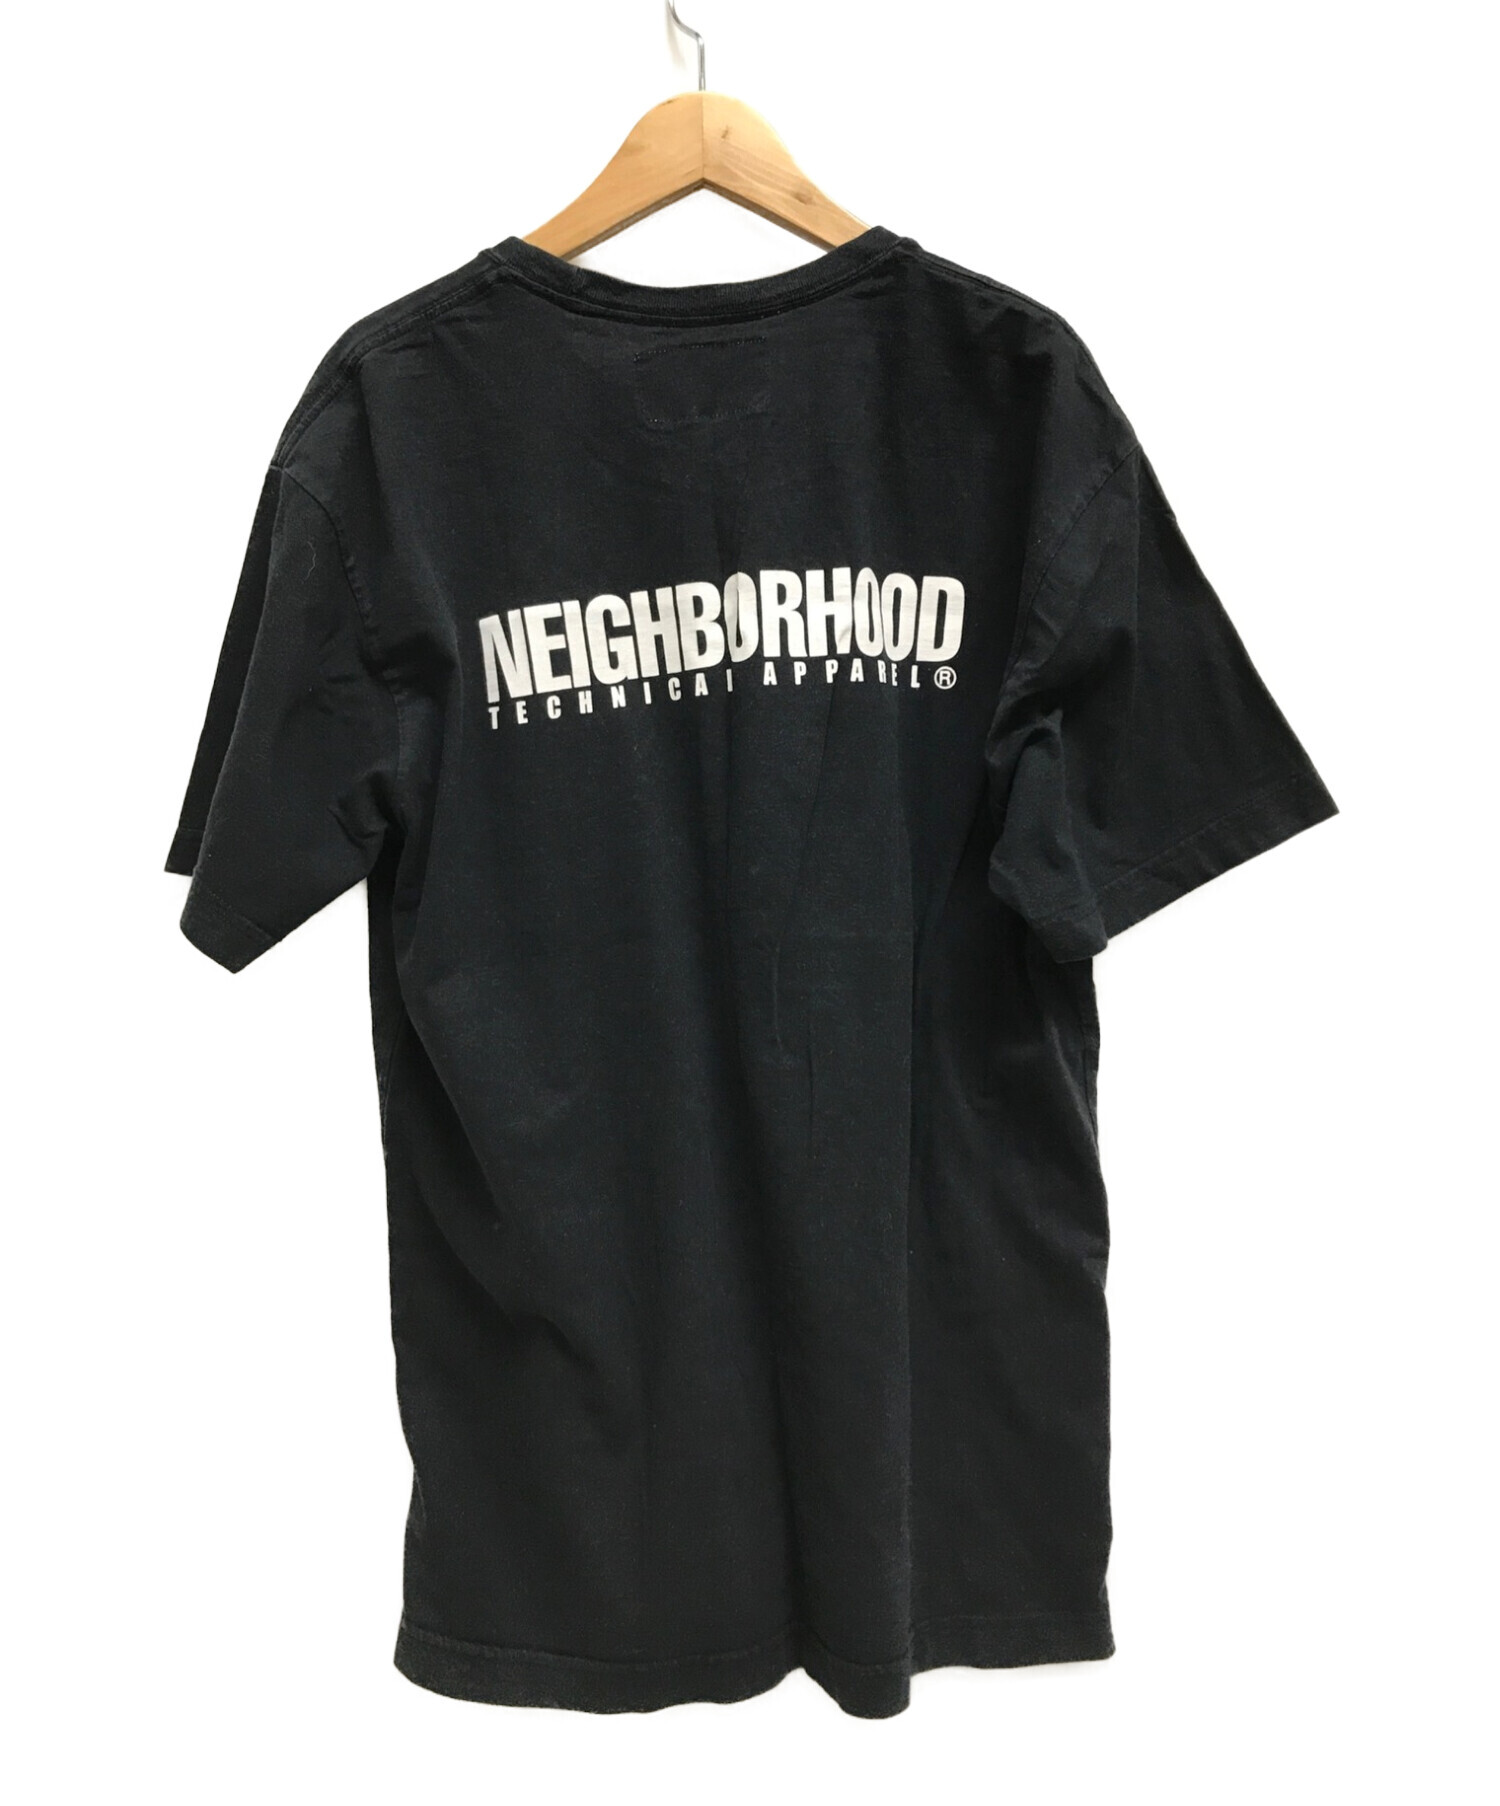 neighborhood ネイバーフッド Tシャツ サイズL - Tシャツ/カットソー